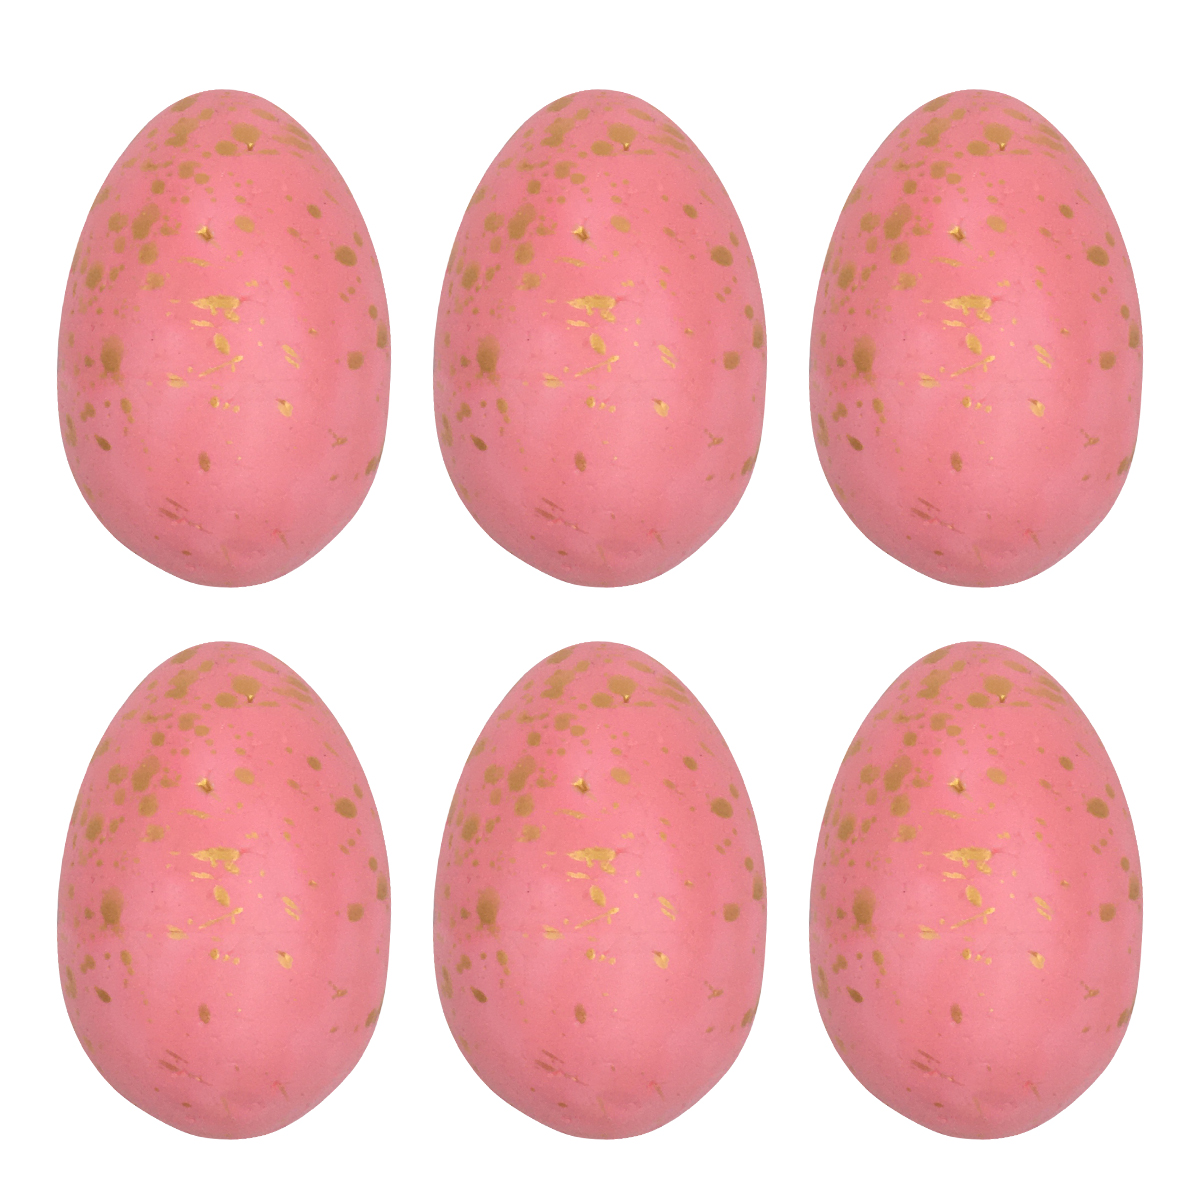 تخم مرغ تزیینی مدل Robin-3 بسته ۶ عددی